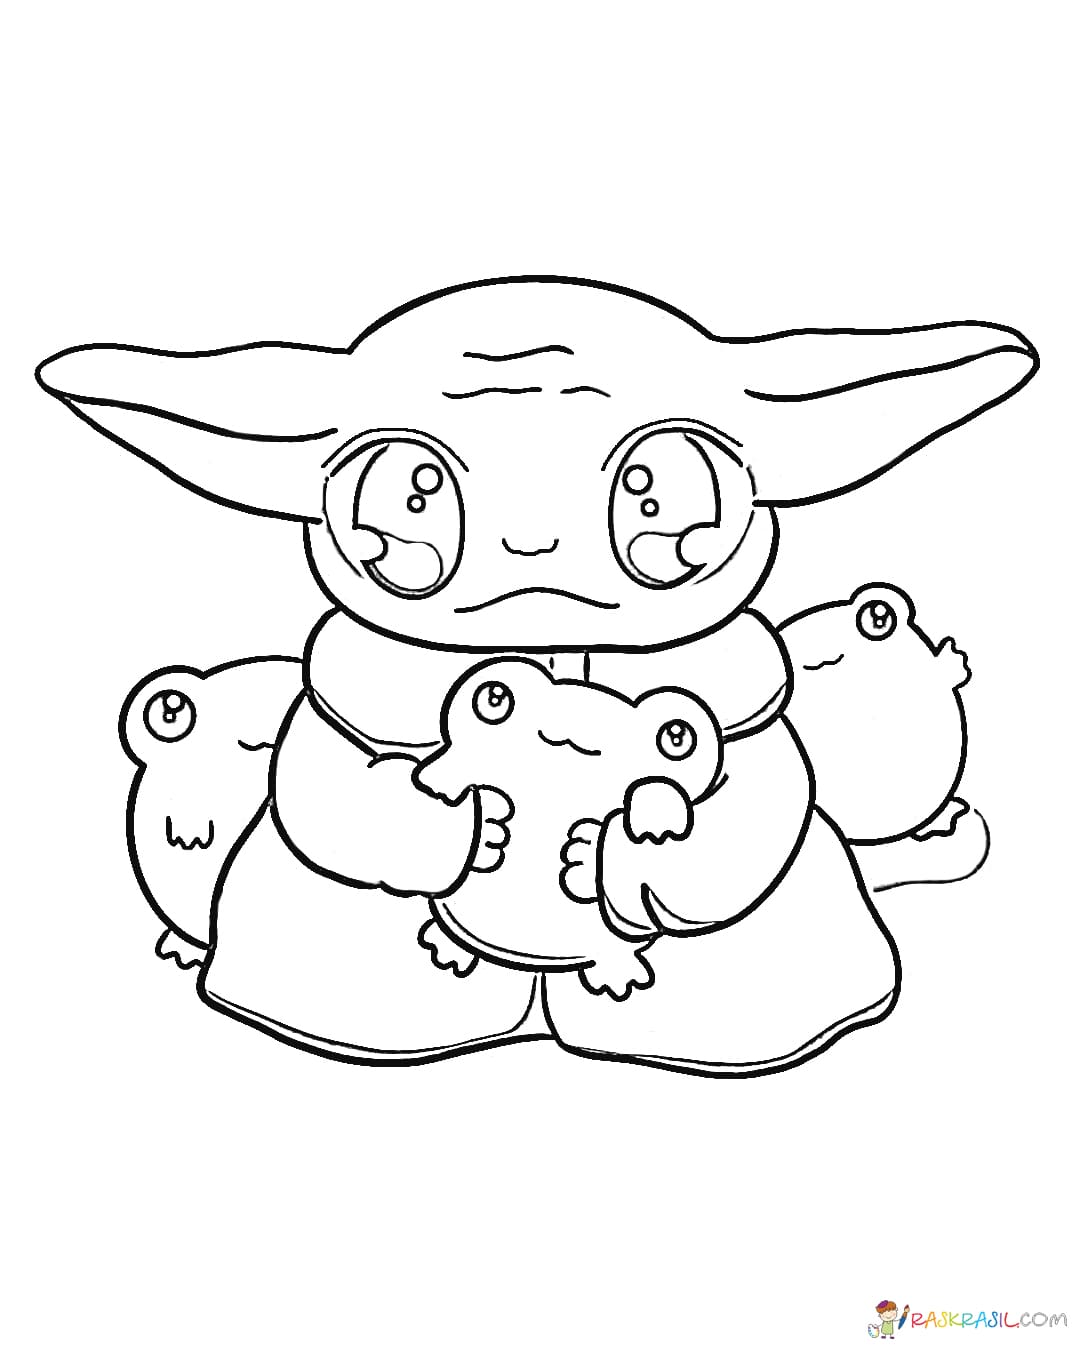 Disegni di Baby Yoda da colorare - Nuove immagini per la stampa gratuita